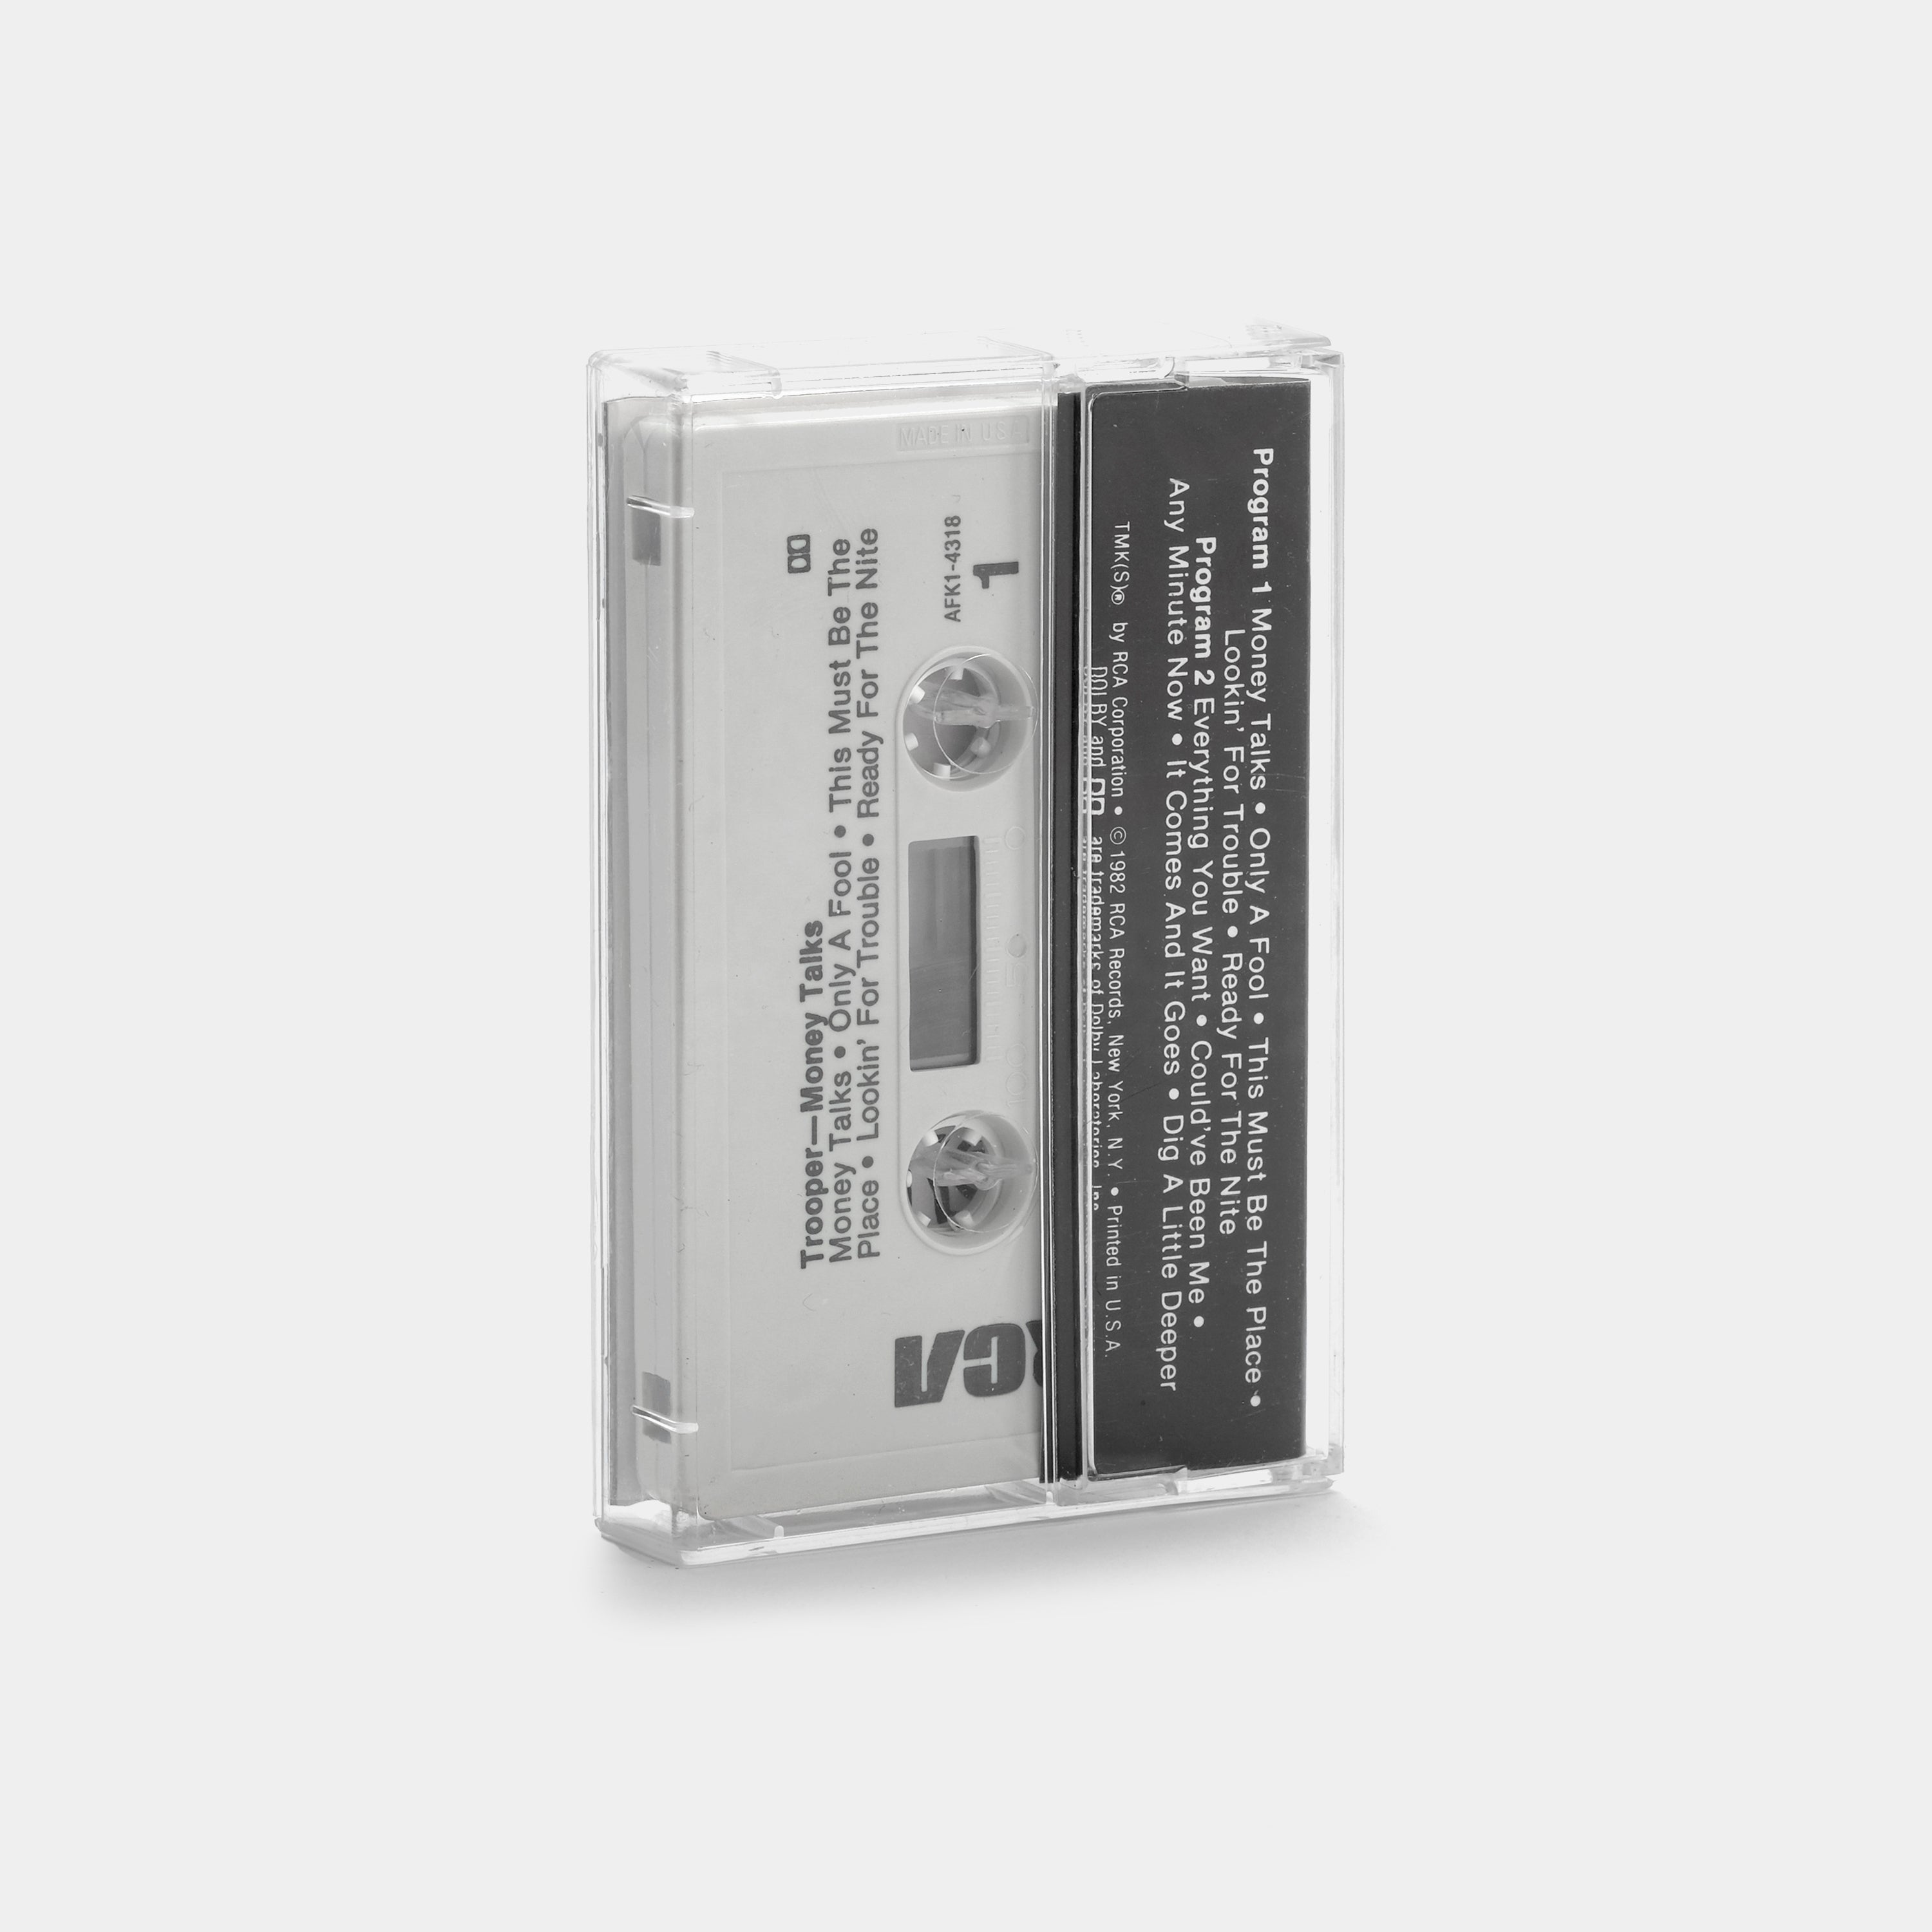 Trooper - Money Talks Cassette Tape